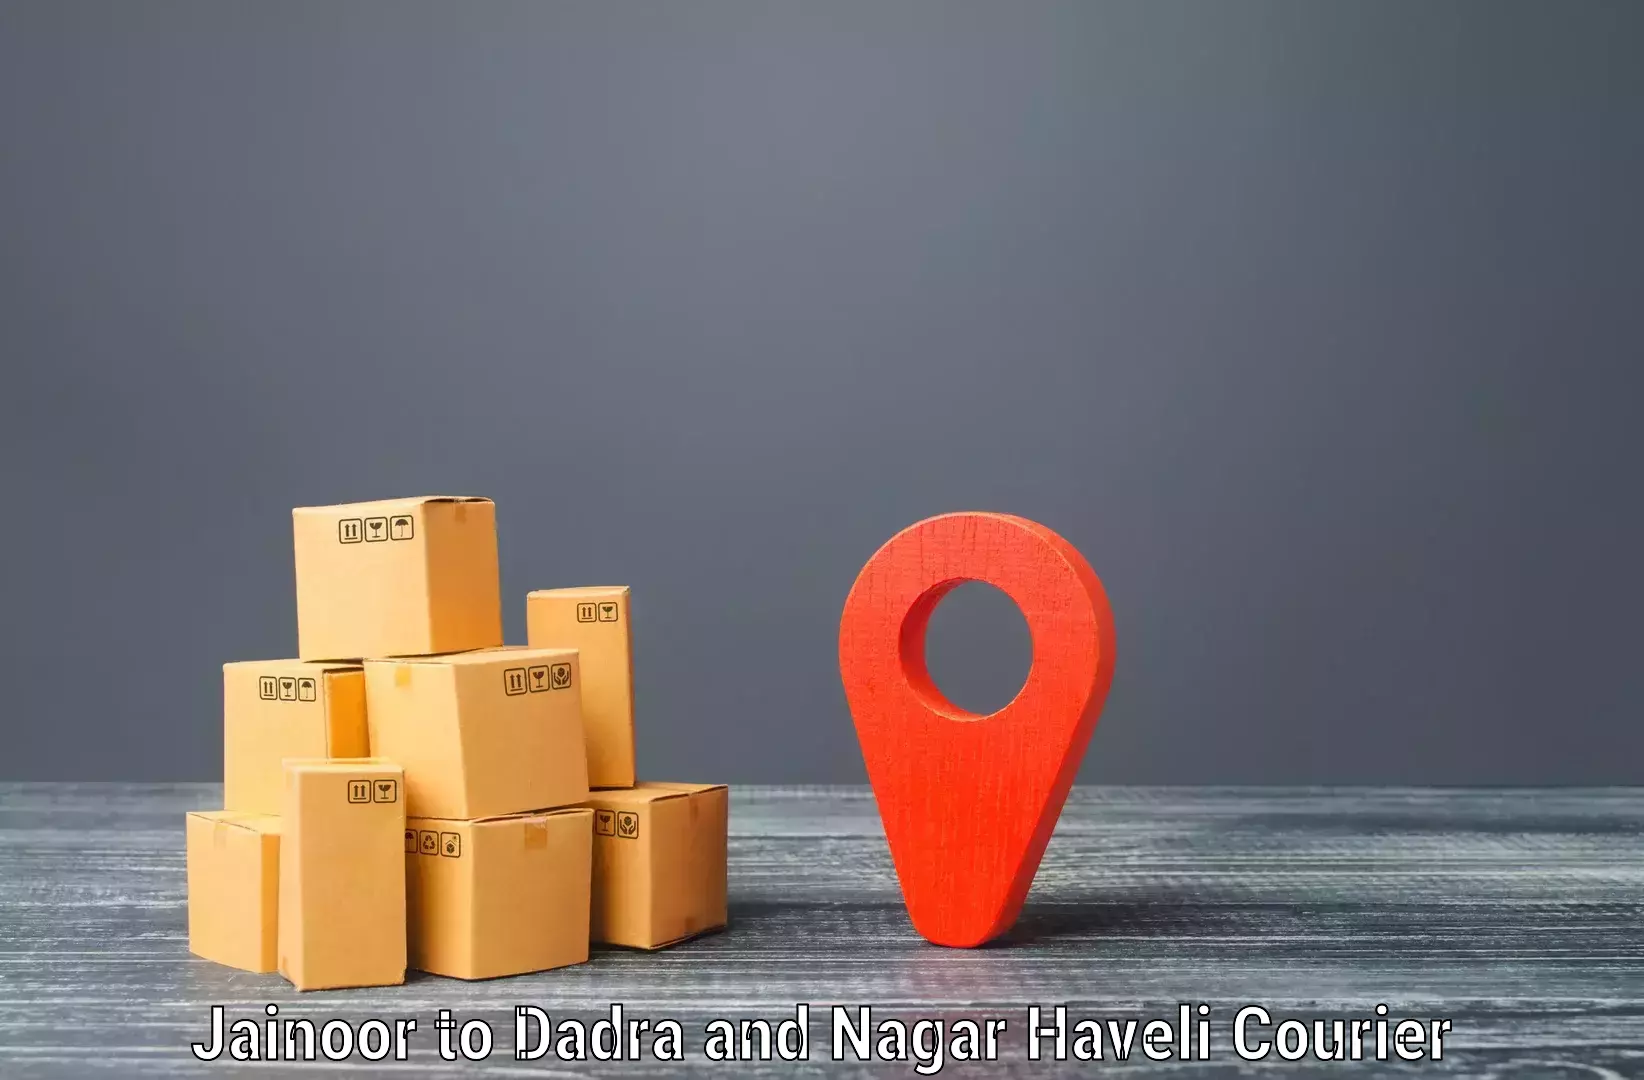 High-priority parcel service Jainoor to Silvassa